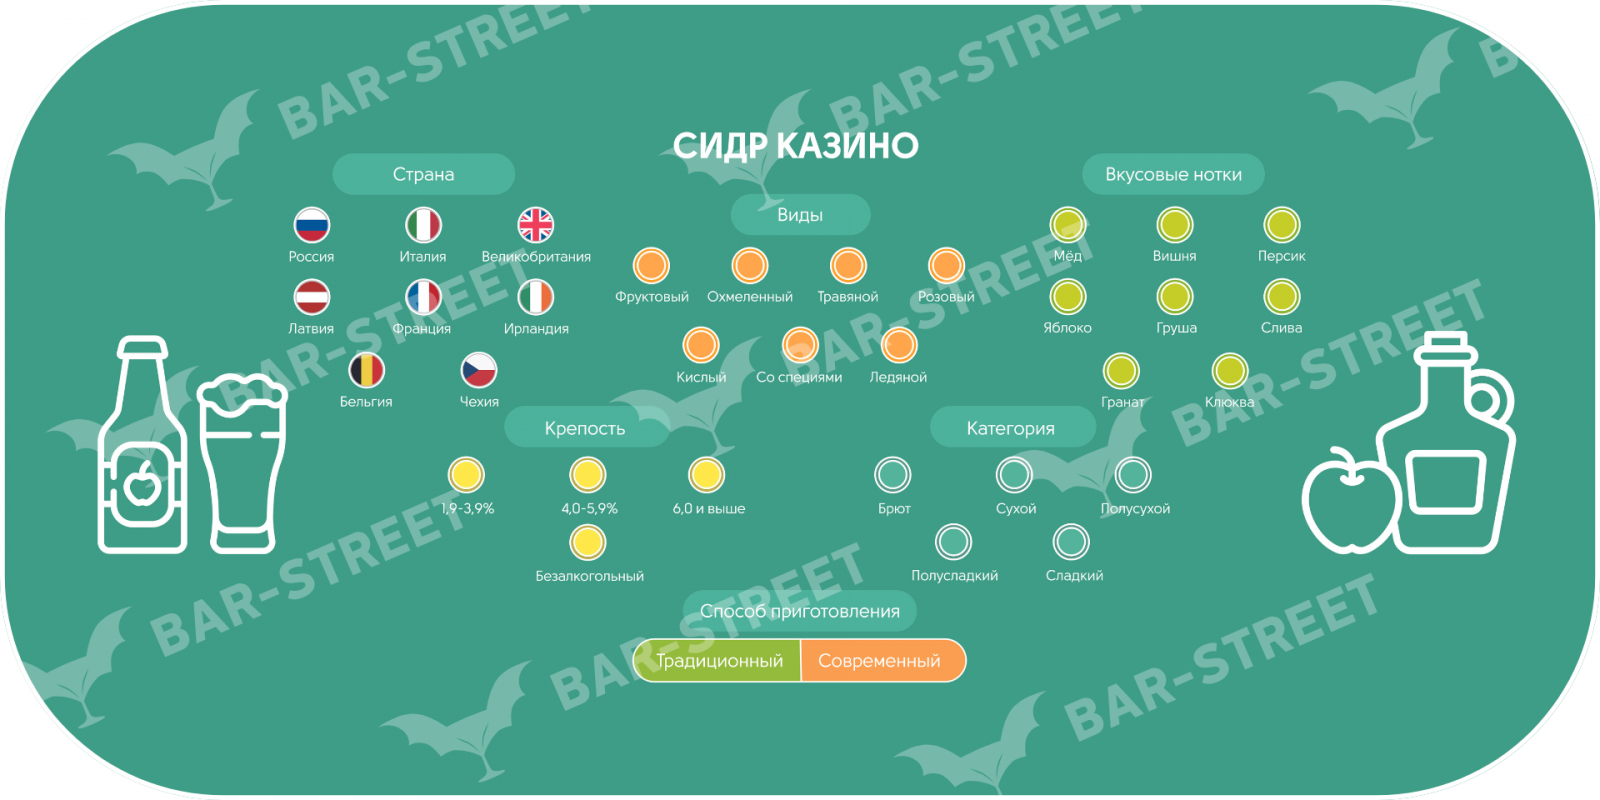 Карта с информацией для казино по напитку "Сидр". Данная игра чаще проводится при заказе полевой кухни, поскольку является смежной по тематике